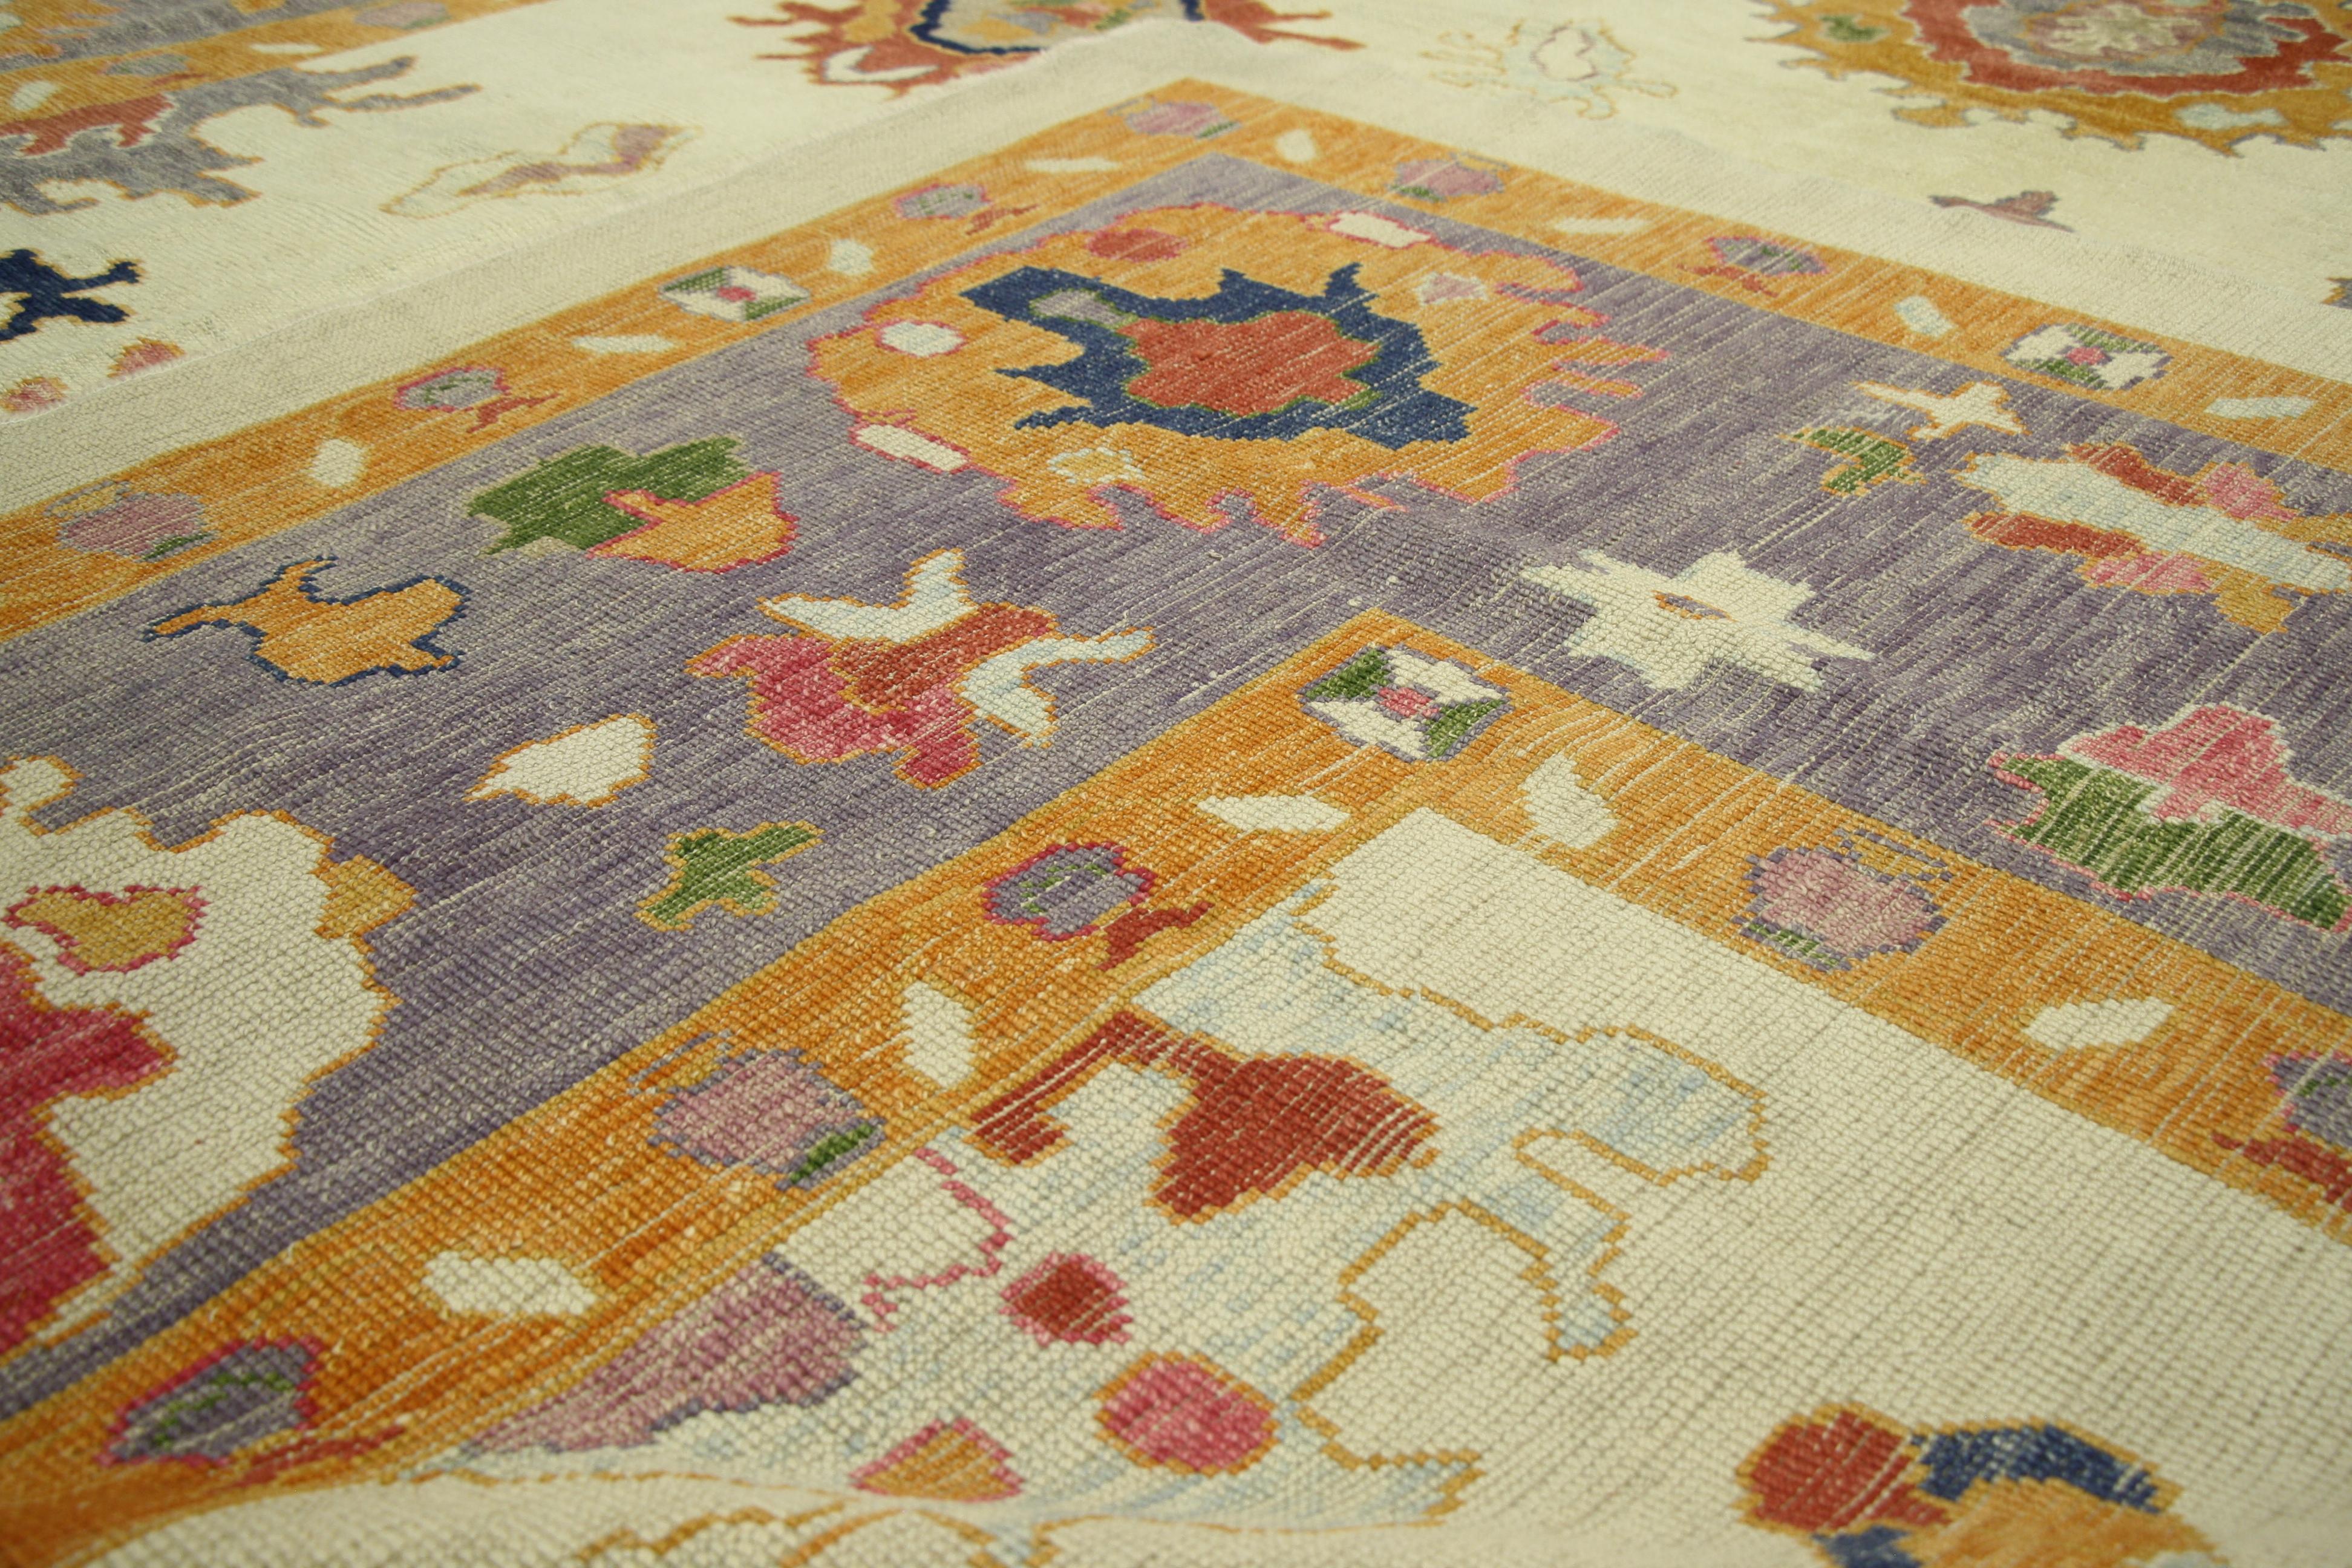 52379, nouveau tapis turc Oushak au style parisien et au motif géométrique à grande échelle. Poli et ludique, ce tapis Oushak en laine turque nouée à la main présente un style parisien idéal pour presque toutes les maisons à la mode. Le design